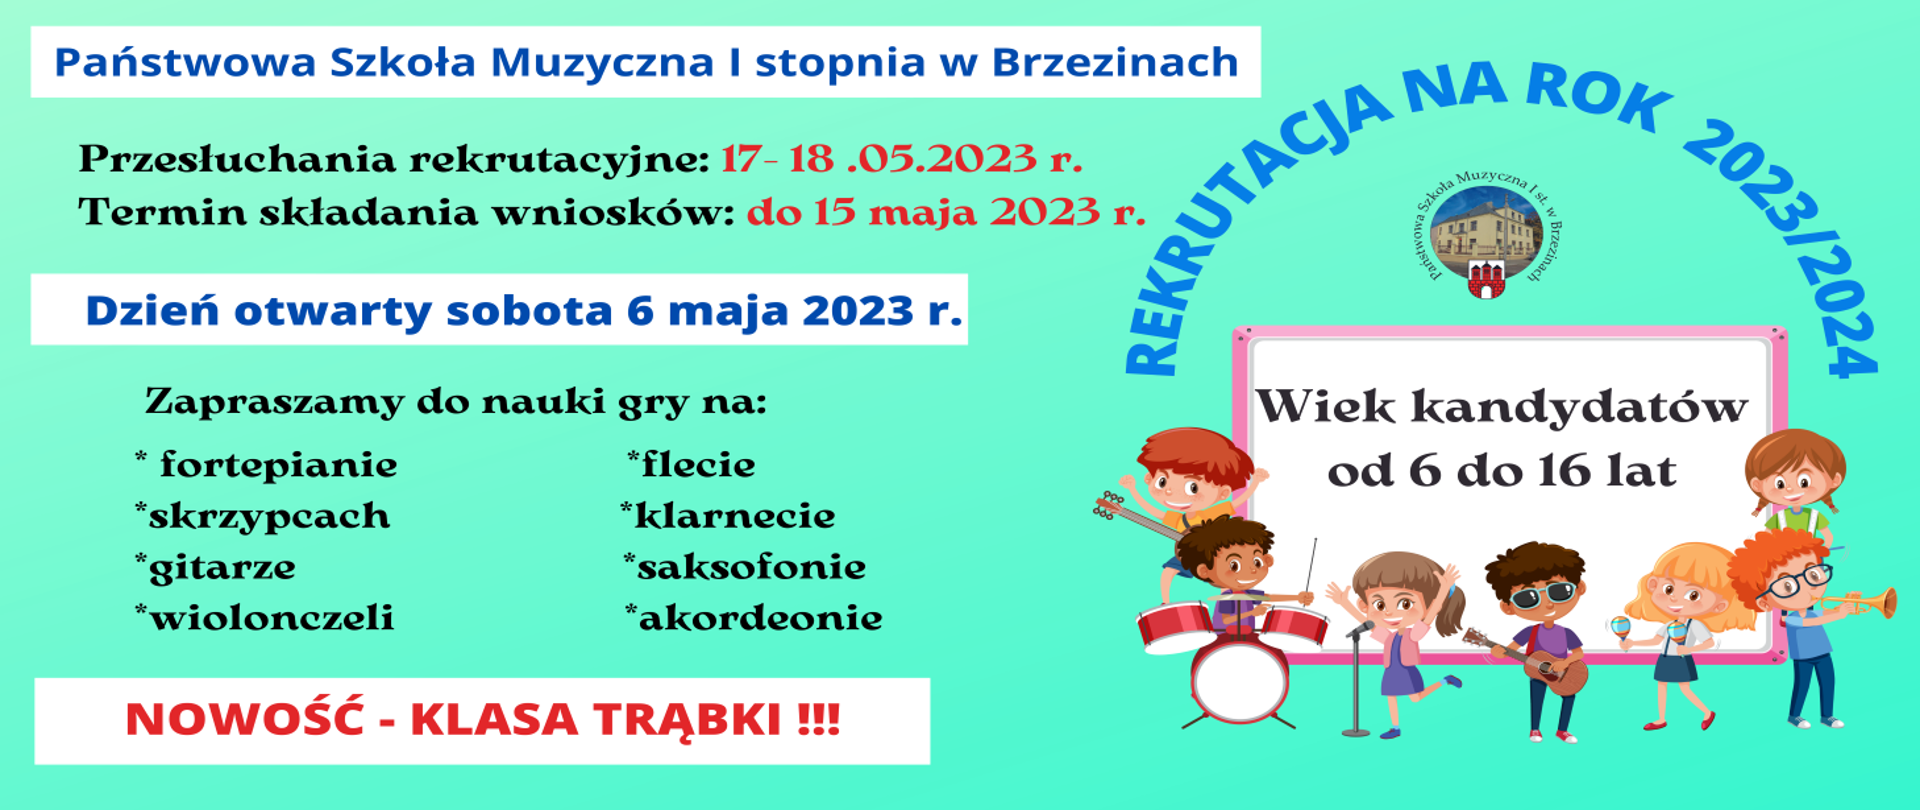 Zdjęcie przedstawiające napis na zielonym tle "Rekrutacja na rok szkolny 2023/2024" wraz z ogólnymi warunkami przyjęcia do Psm I st. w Brzezinach. Z prawej strony dzieci grające na instrumentach. 